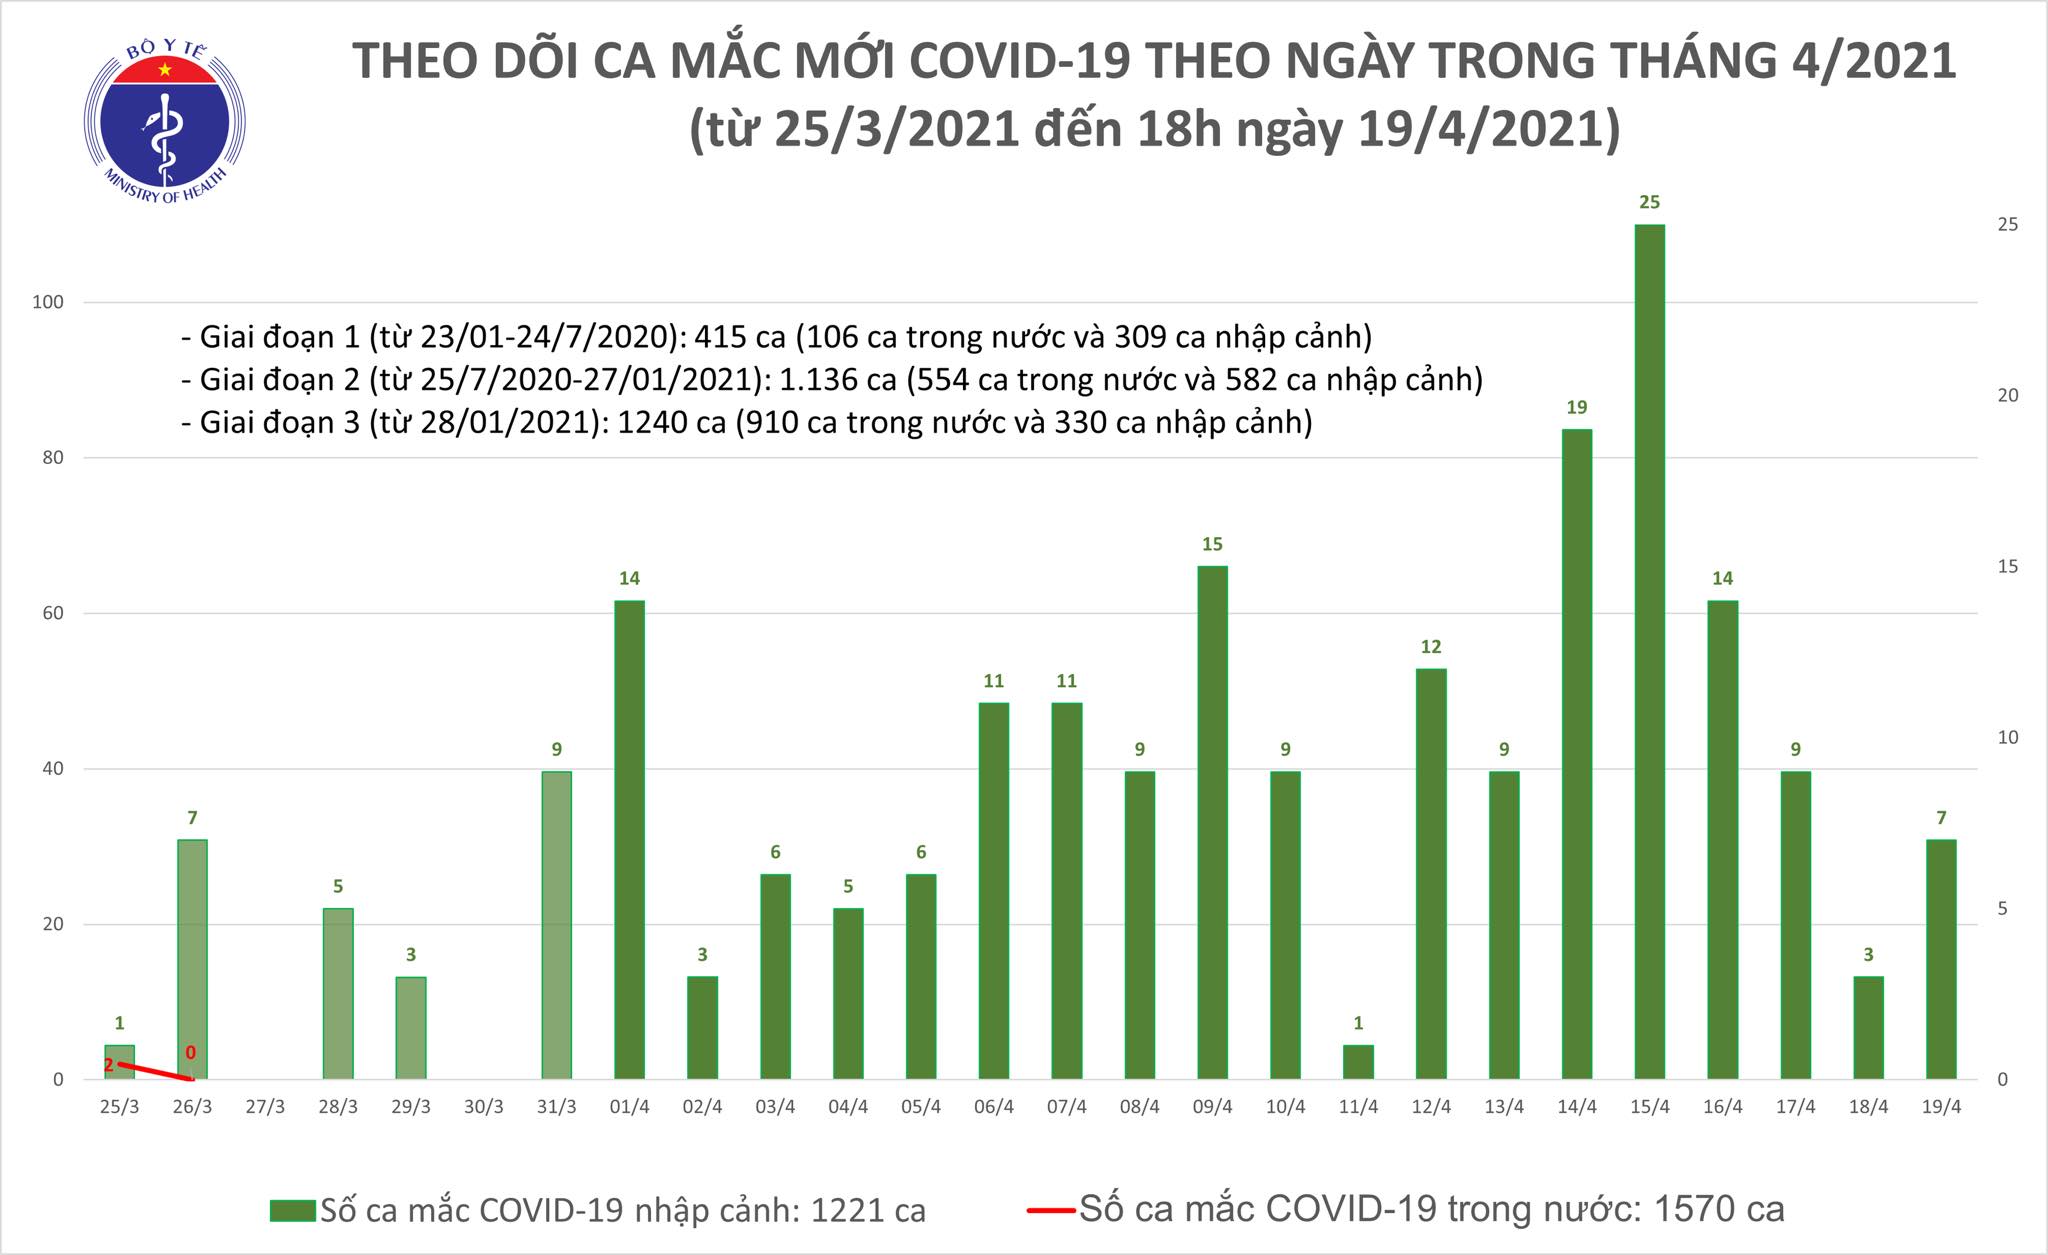 Chiều 19/4: Thêm 6 ca mắc COVID-19 tại Tây Ninh và 3 địa phương khác